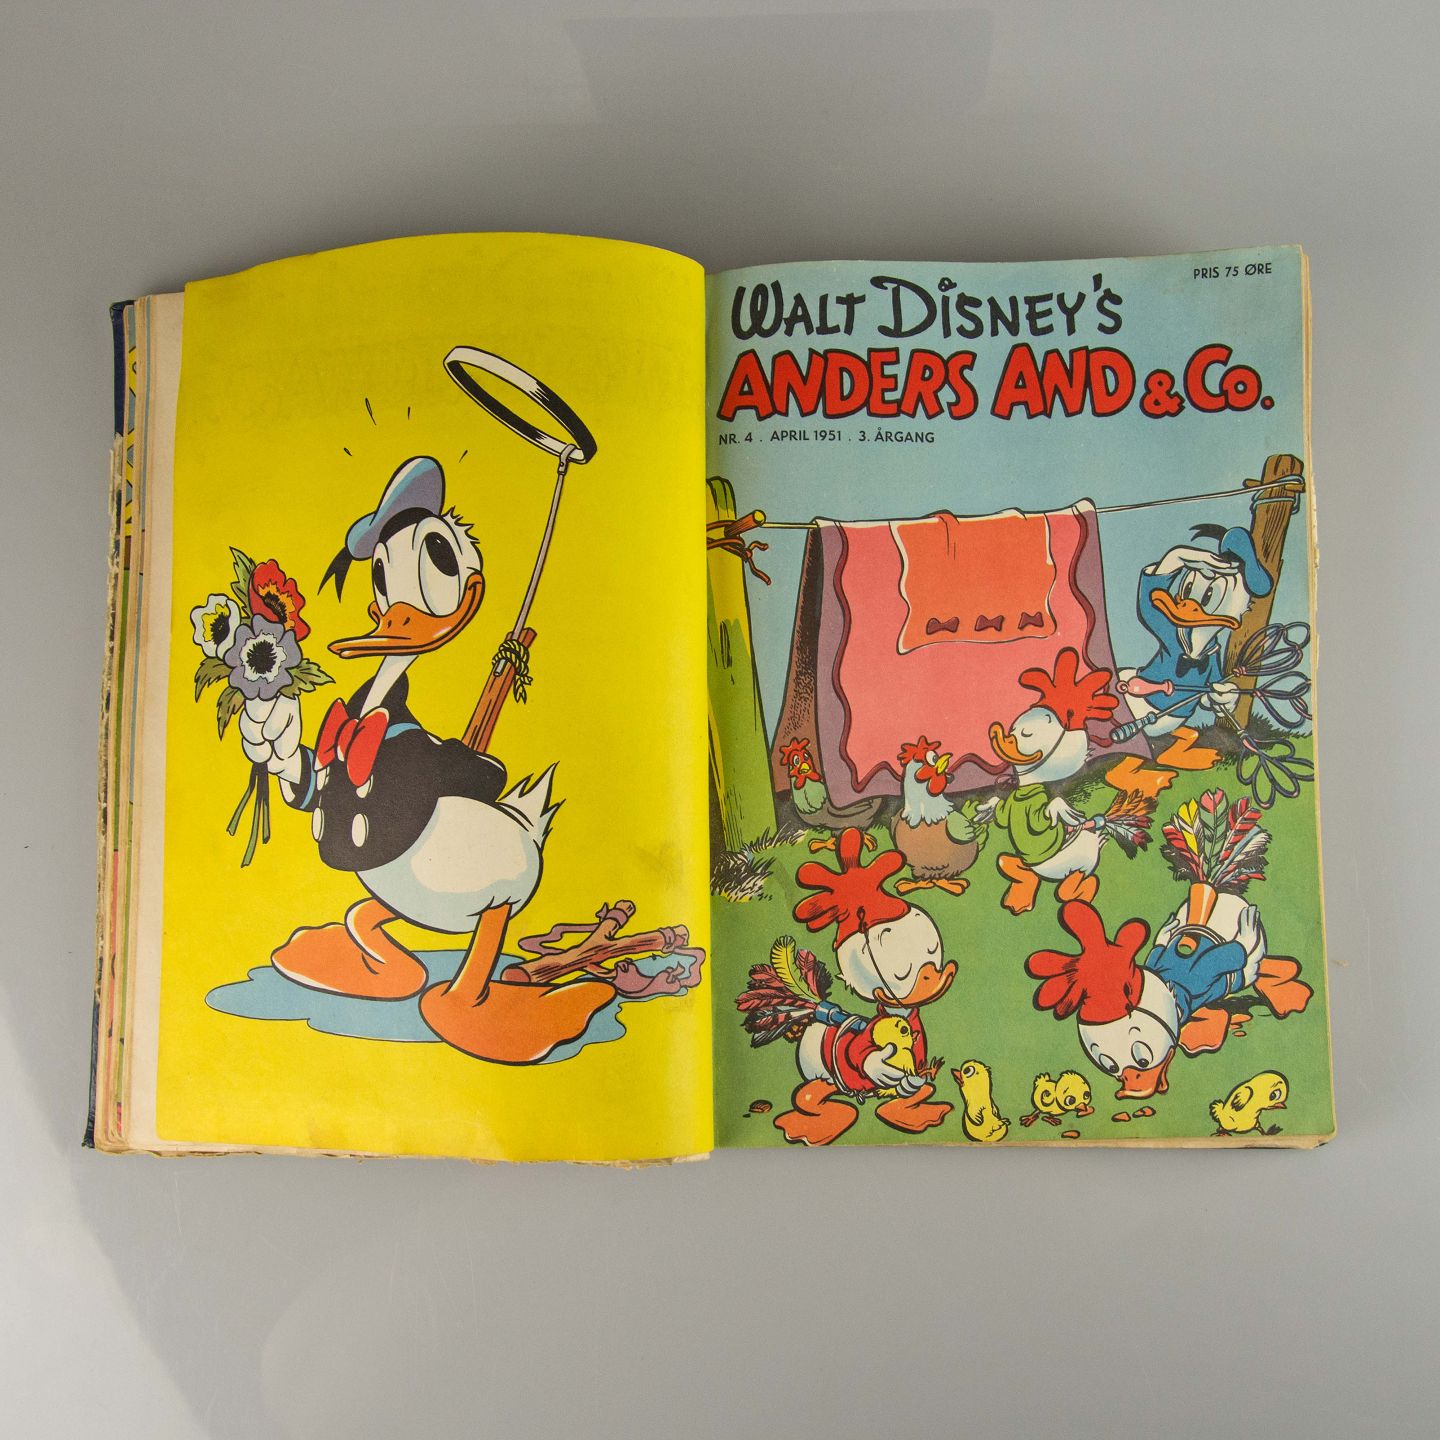 Antage Kilde Anvendelse Kinnerup Antik & Porcelæn - Walt Disney * Anders And & Co blade år 1951